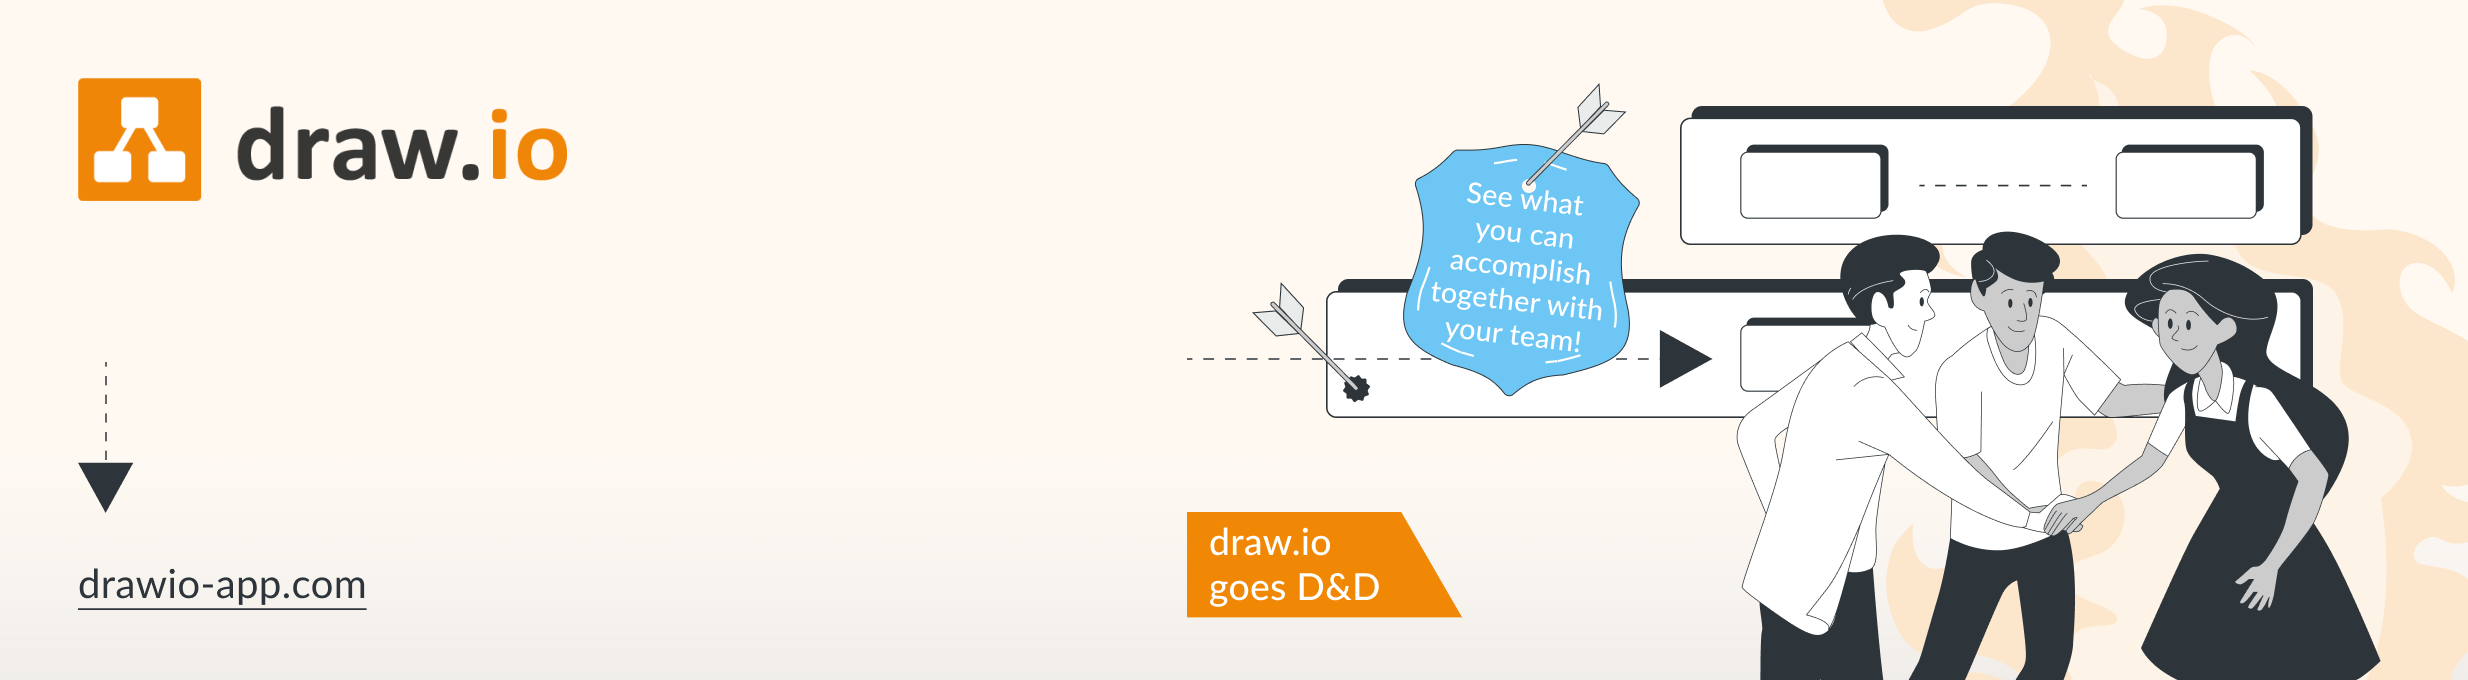 Zusammenarbeit mit Whiteboards von draw.io – hilft auch beim Teambuilding und bei der Zusammenarbeit